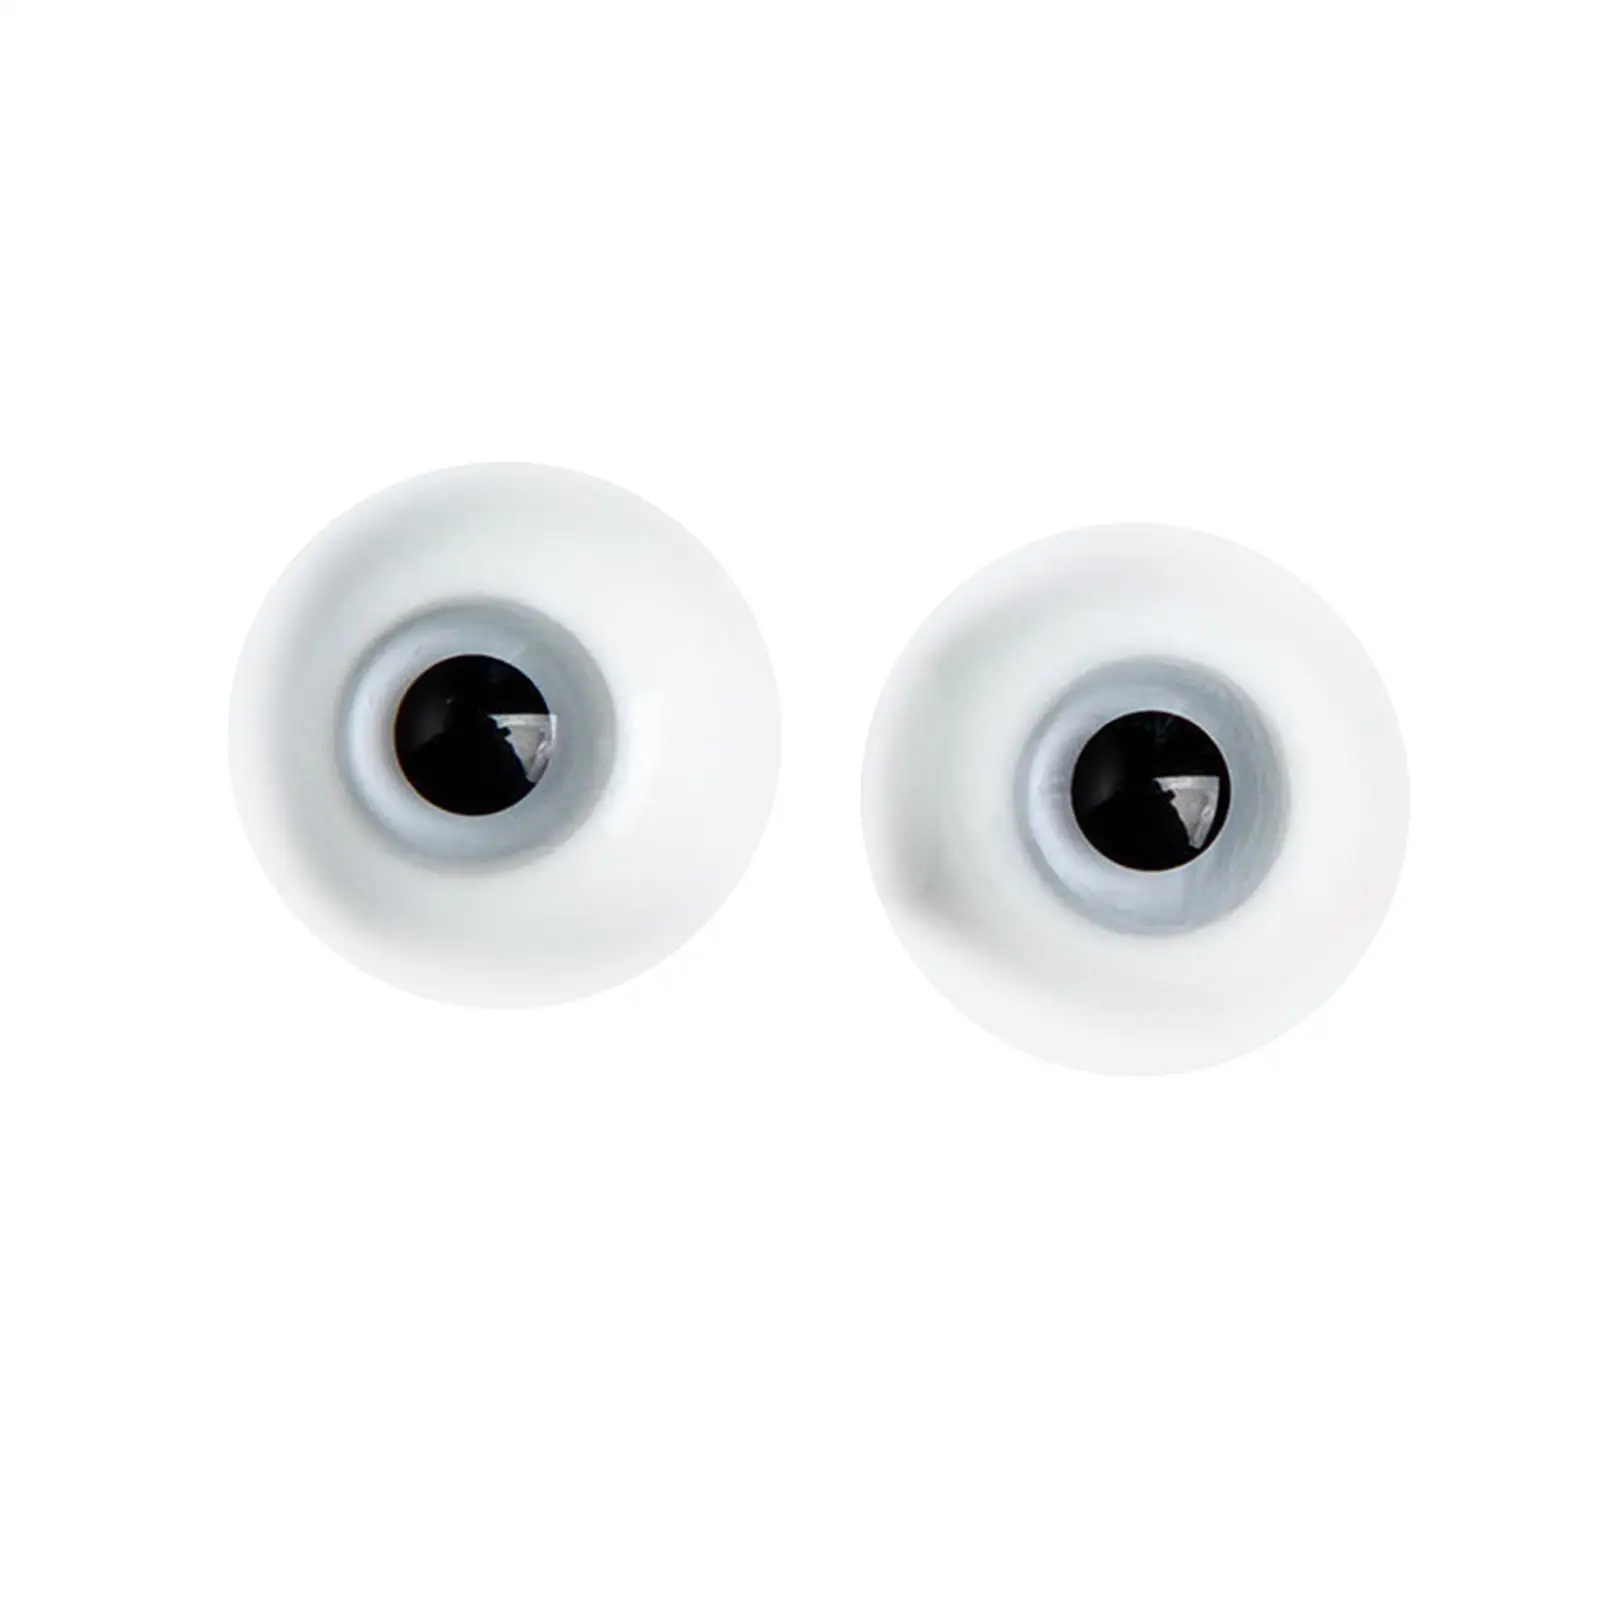 2шт Большие кукольные глаза, шевелящиеся глаза (6 мм), подвижные художественные поделки, глазное яблоко для изготовления кукол, скульптура, реквизит для Хэллоуина Изображение 3